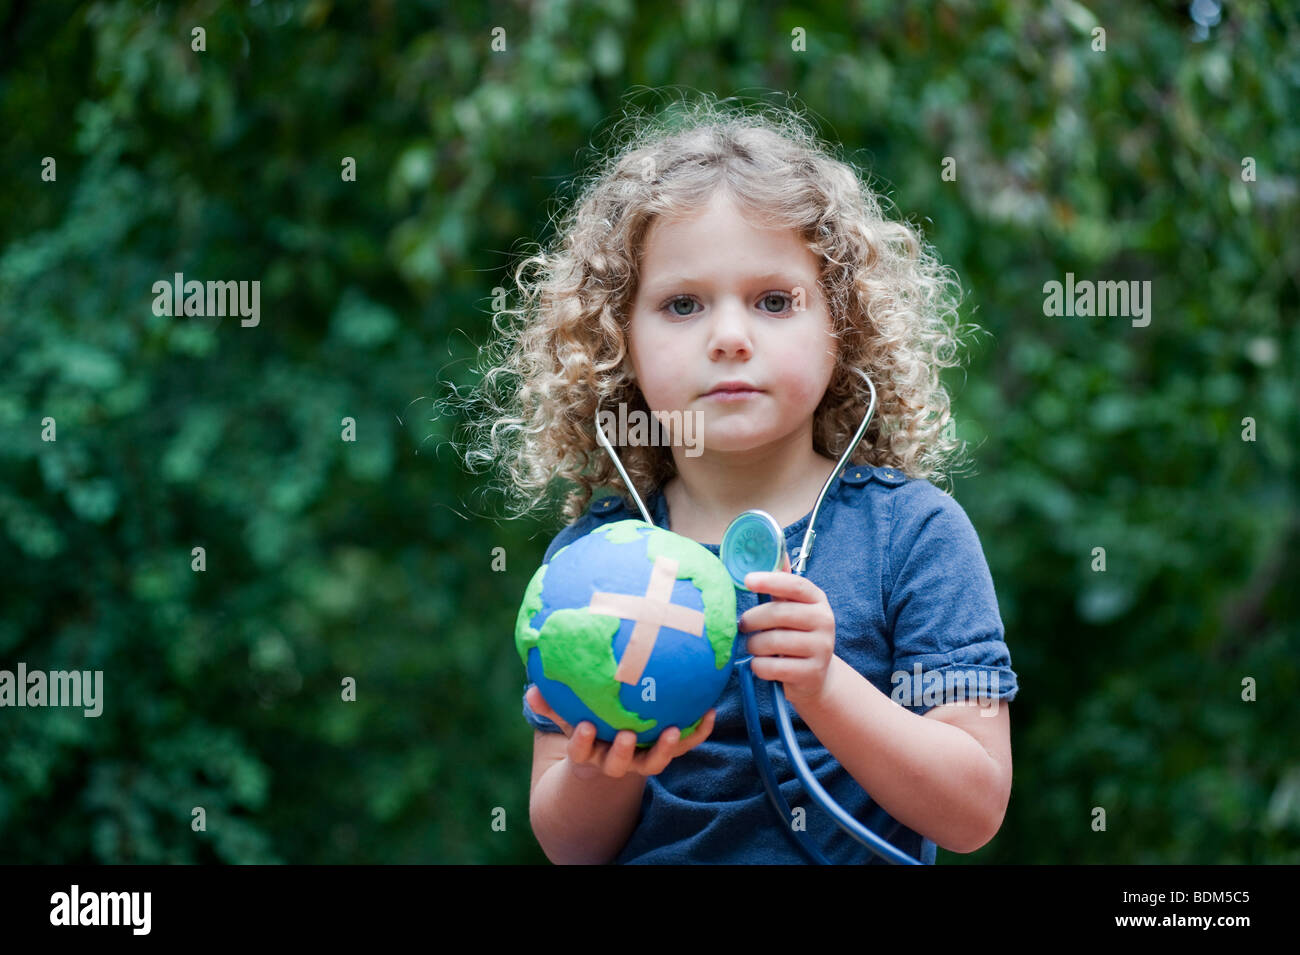 Junges Mädchen hält ein Modell eines kranken Planeten Erde mit einem Heftpflaster befestigt und überprüfen ihre Gesundheit mit einem Stethoskop Stockfoto